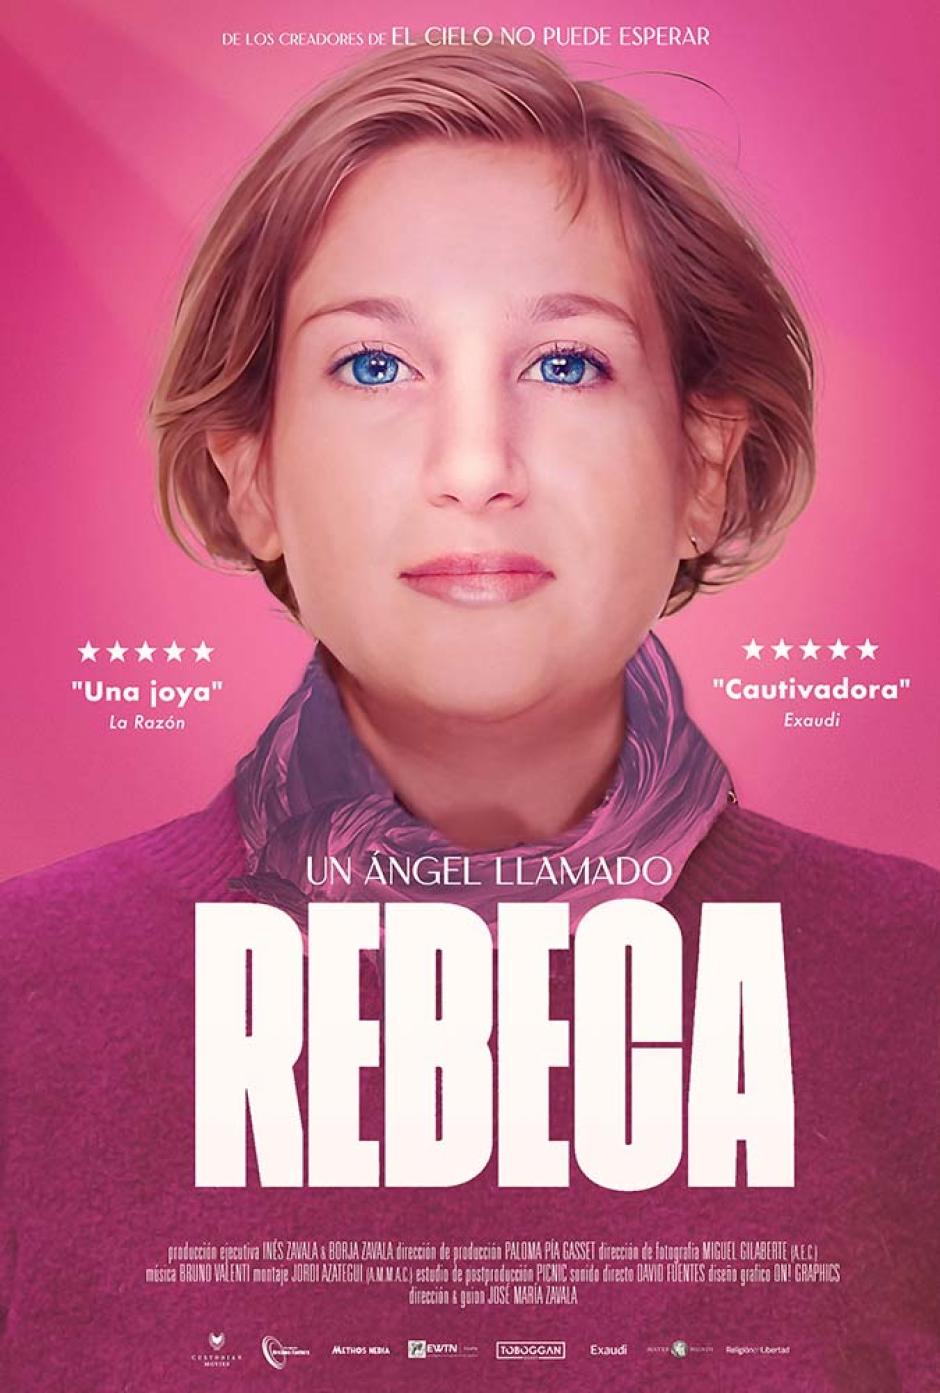 La película "Un ángel llamado Rebeca" se estrena en cines el 26 de abril